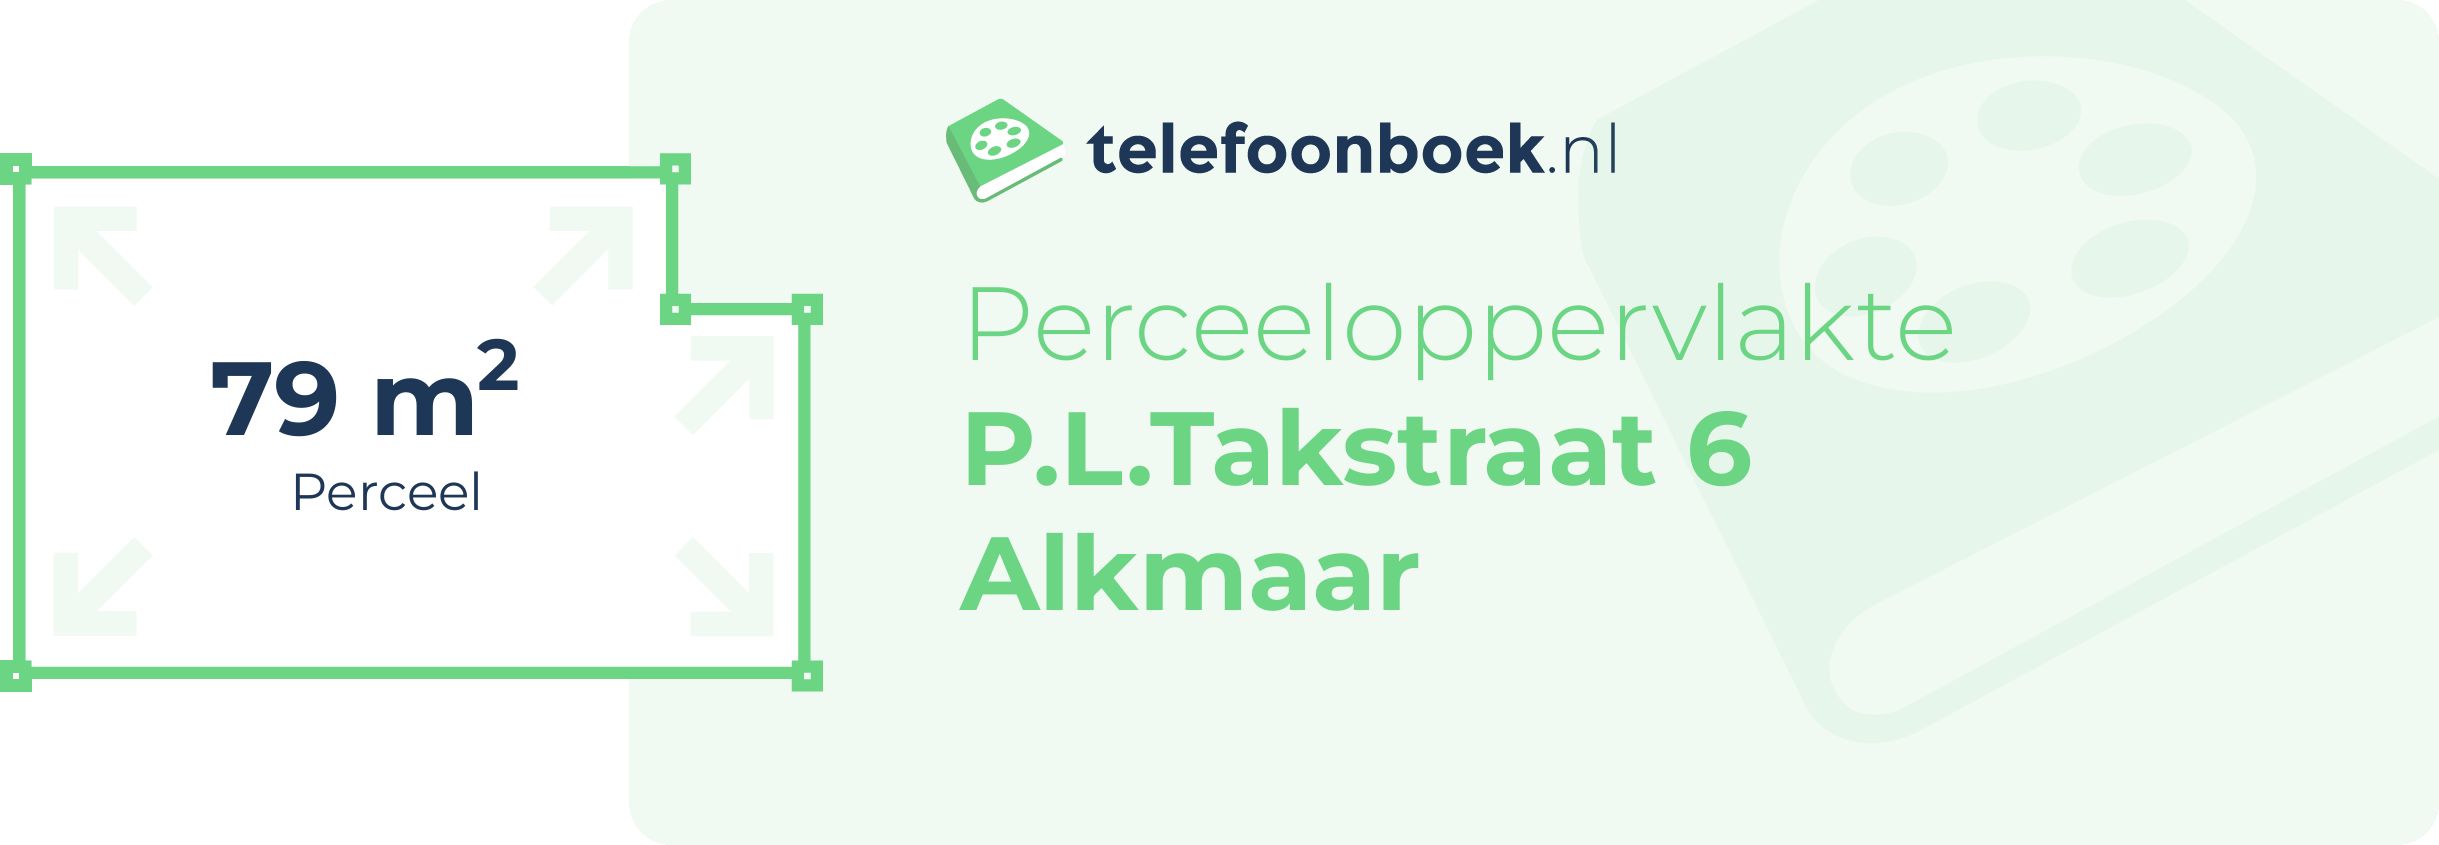 Perceeloppervlakte P.L.Takstraat 6 Alkmaar